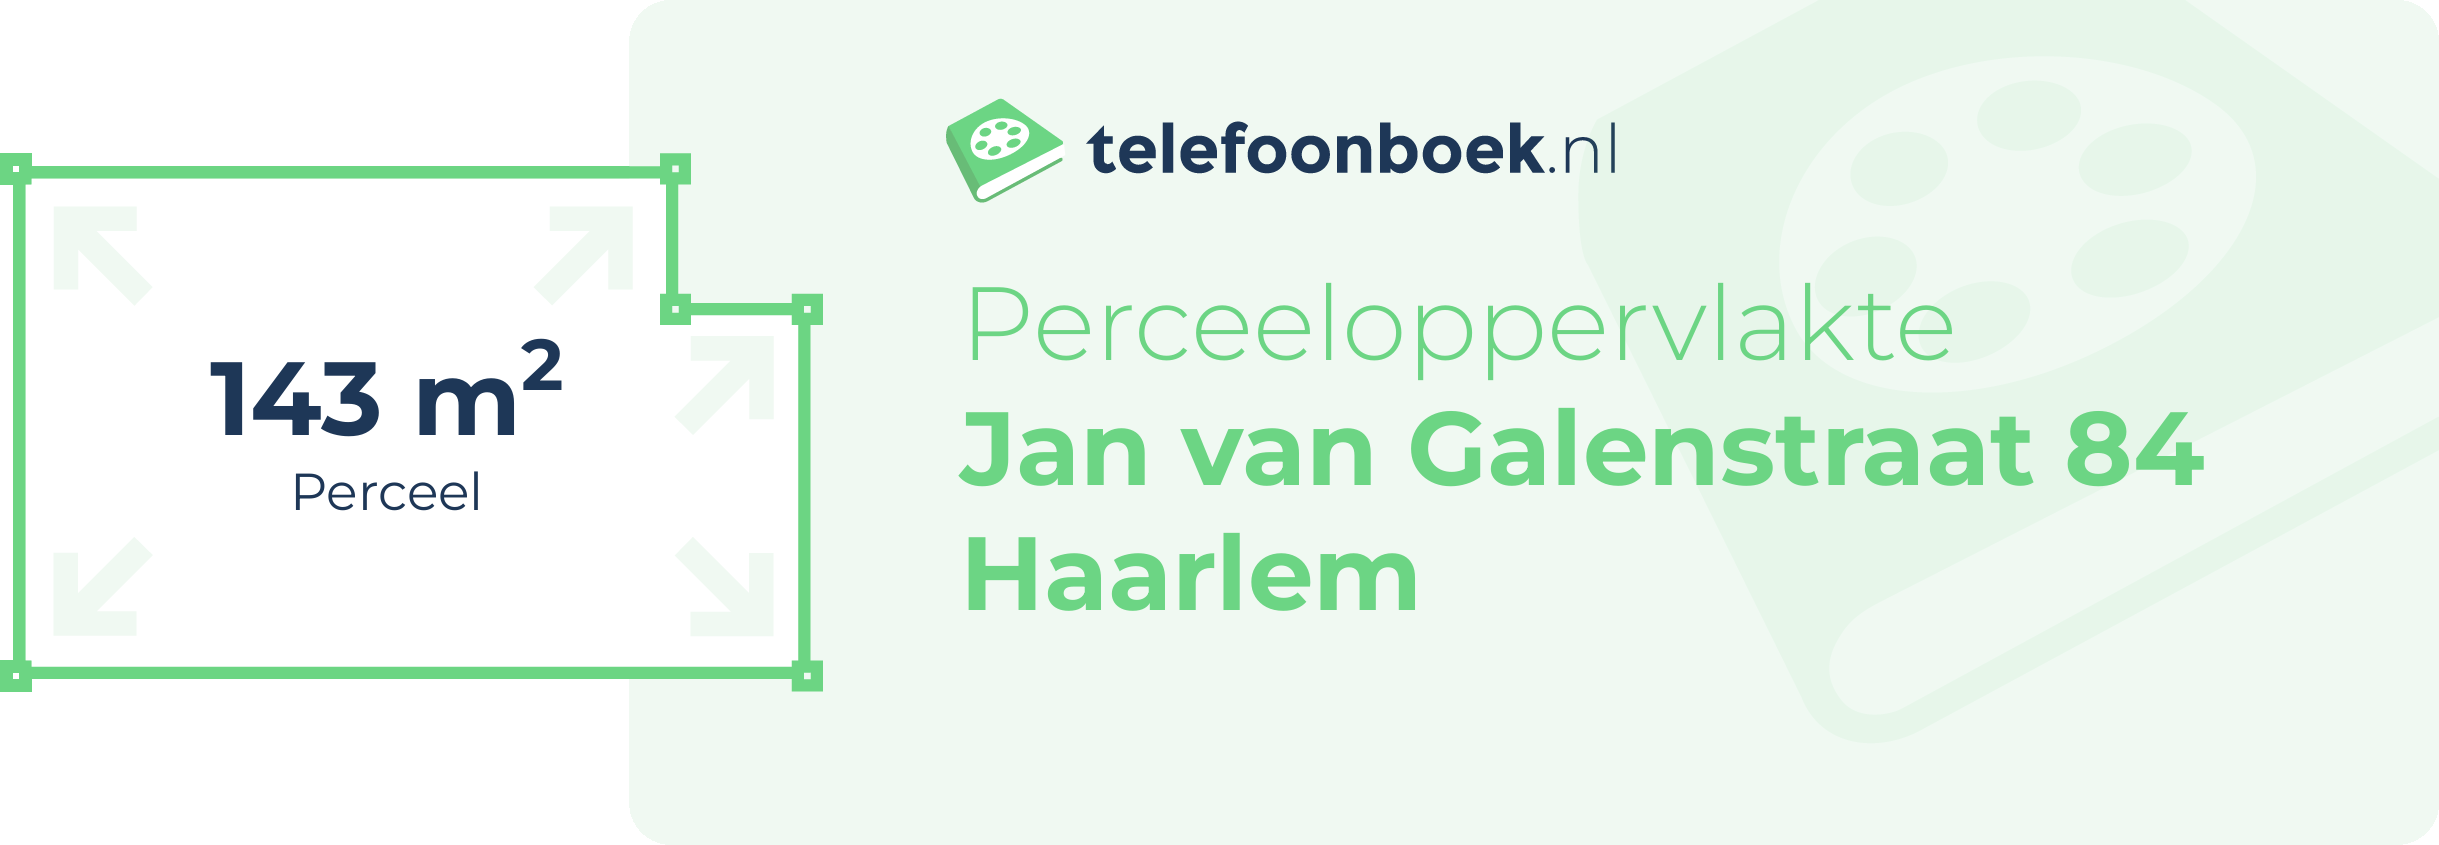 Perceeloppervlakte Jan Van Galenstraat 84 Haarlem